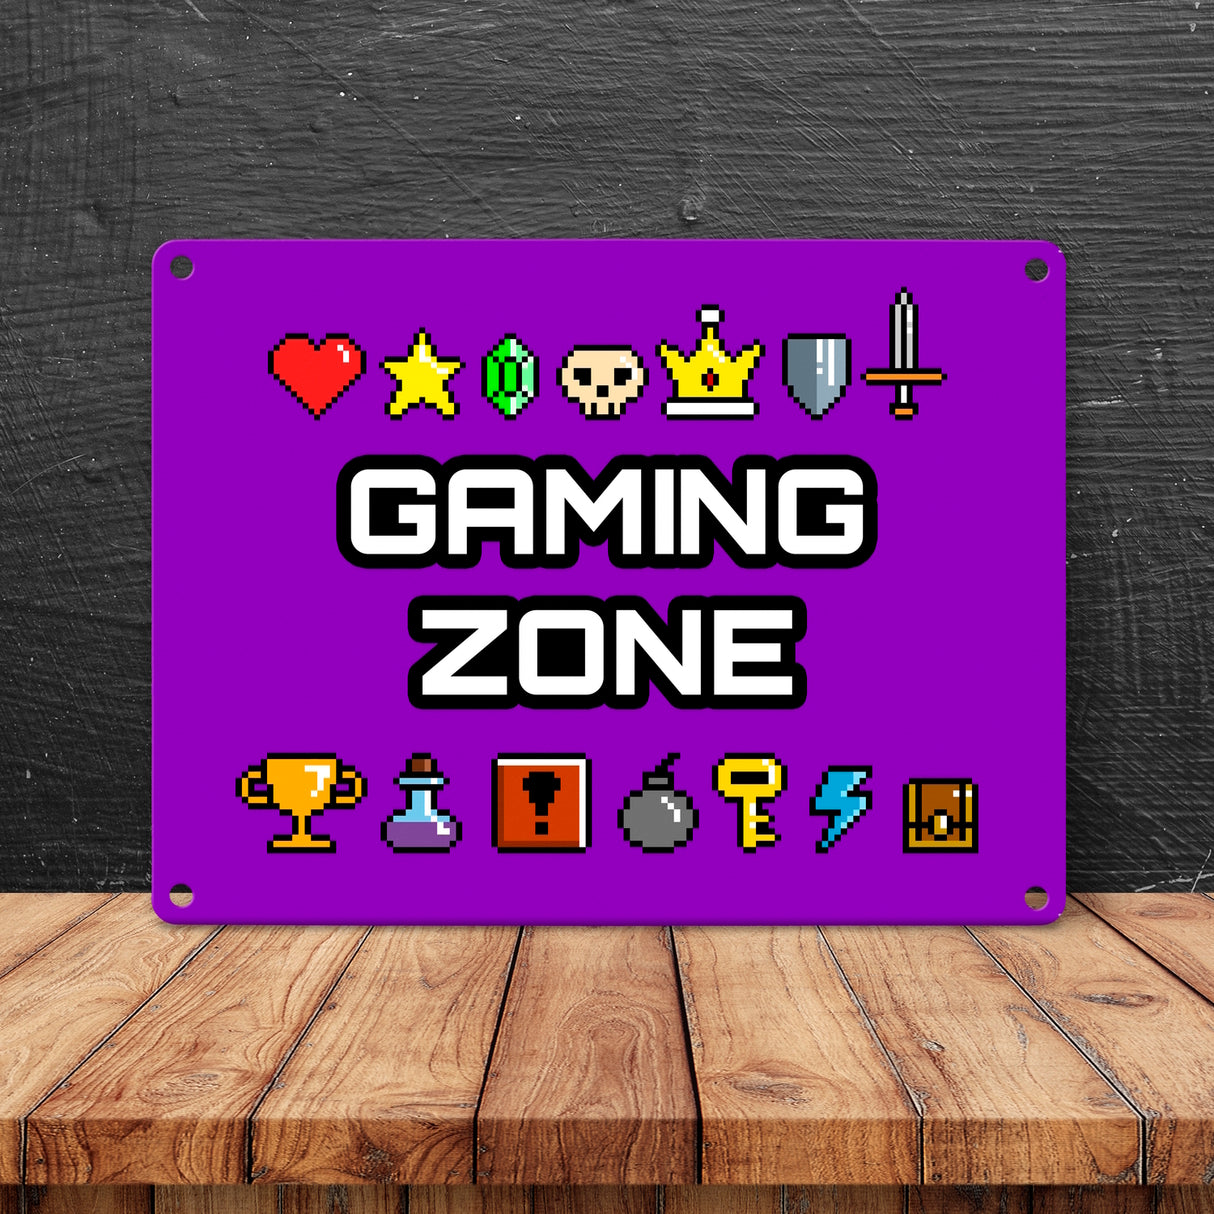 Gaming Zone Metallschild mit Pixel-Items für Zocker in lila